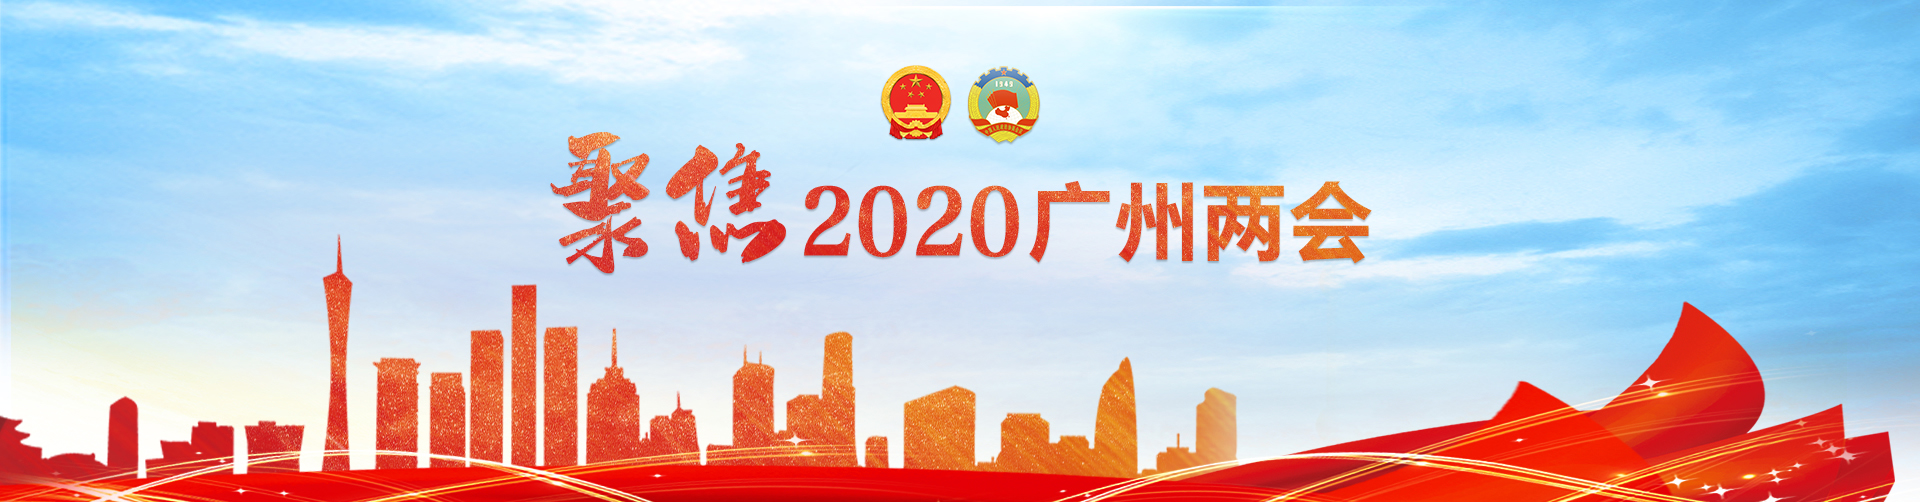 聚焦2020广州